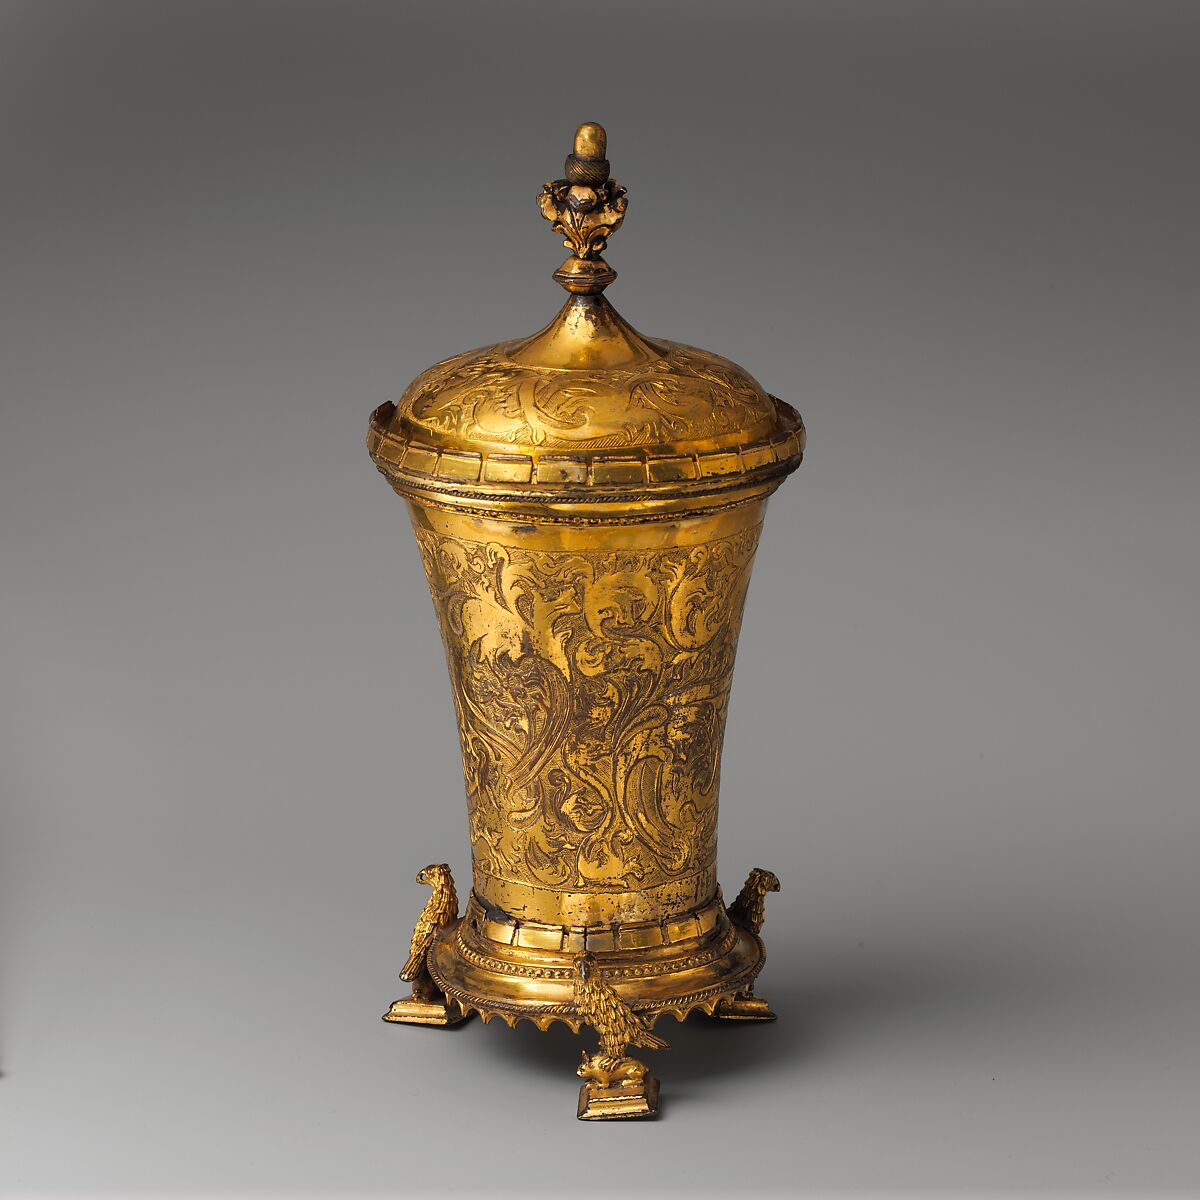 Covered Beaker, Attributed to the Workshop of Sebastian Lindenast the Elder (German, Nuremberg 1460–1526 Nuremberg), Copper gilt, German 